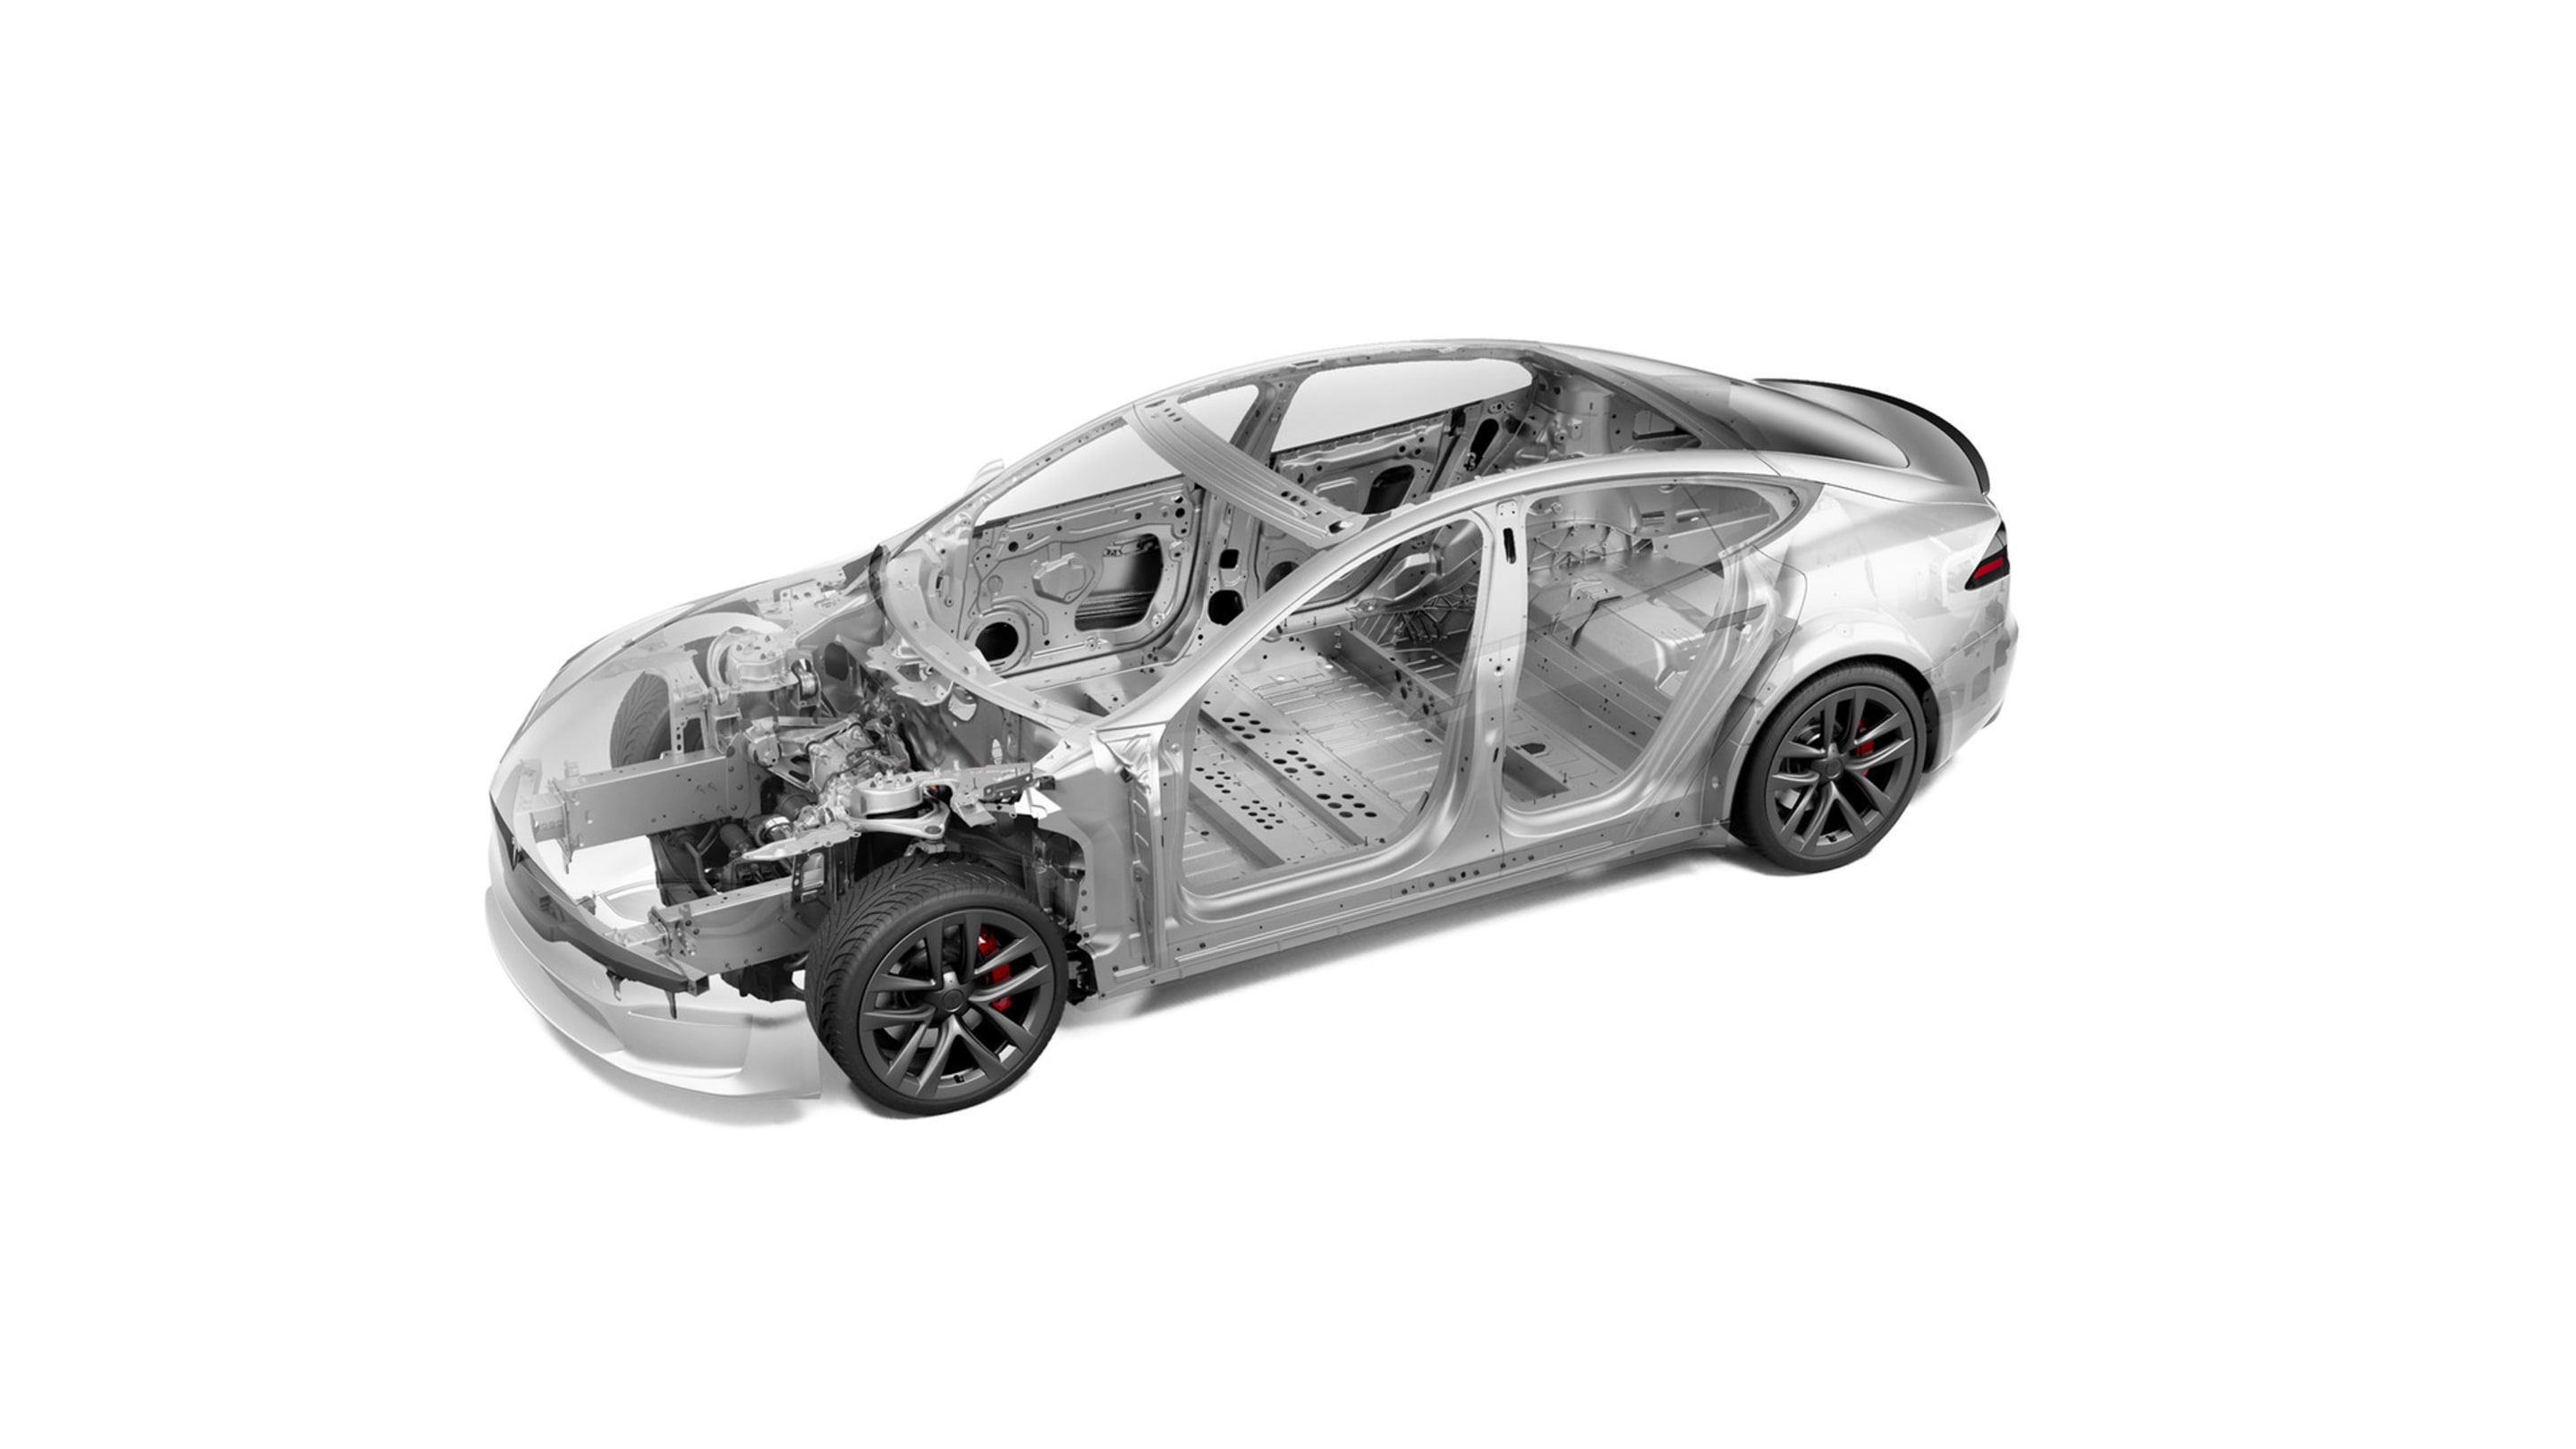 Visualización de las características de seguridad del chasis de un Model S Plaid con llantas negras de 21 pulgadas